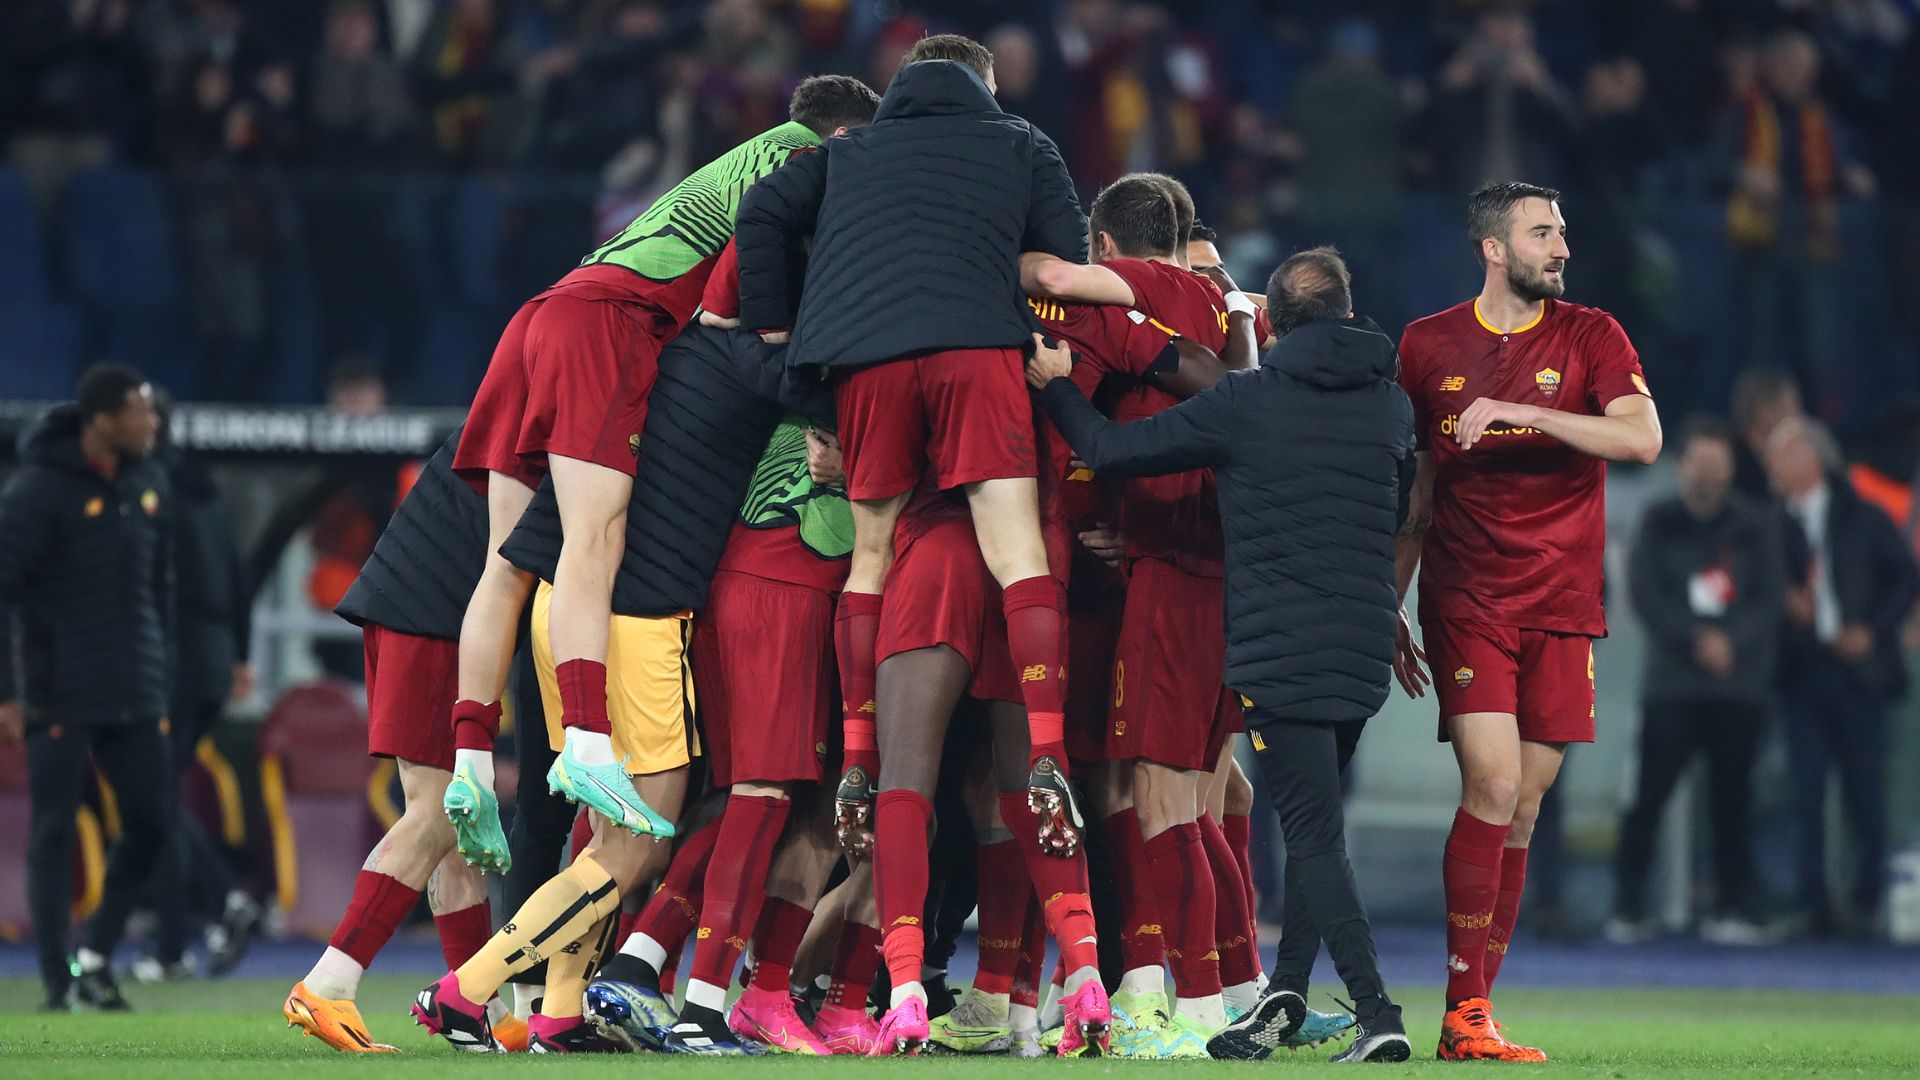 Roma comemorando classificação na Europa League (Crédito: Getty Images)